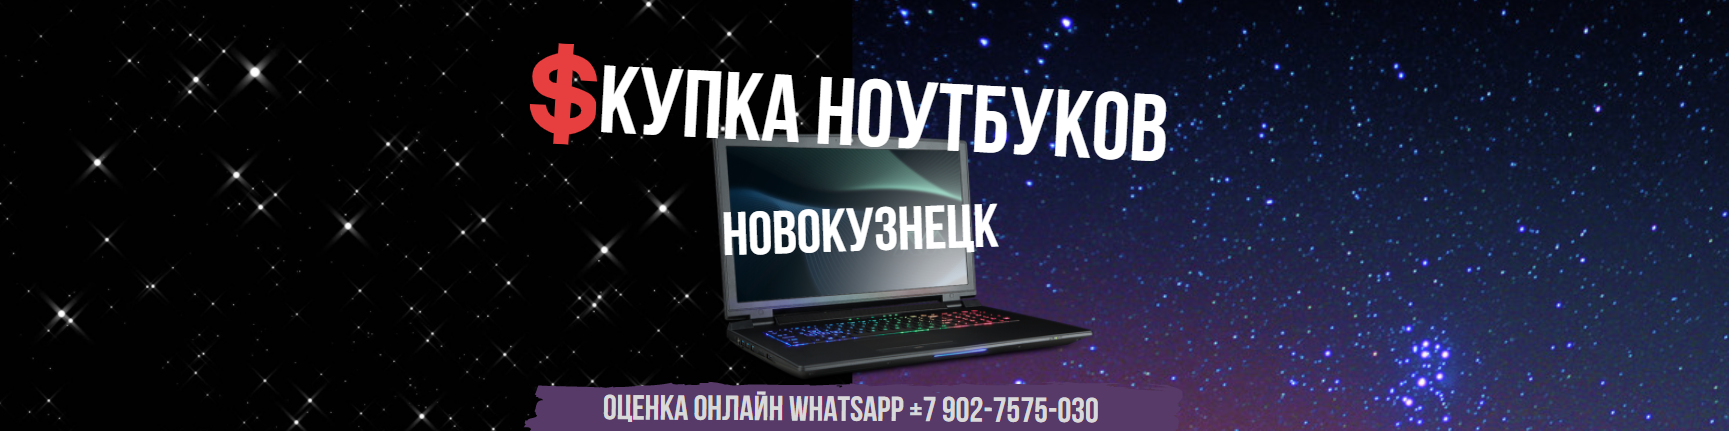 Купить Бу Ноутбук Новокузнецк